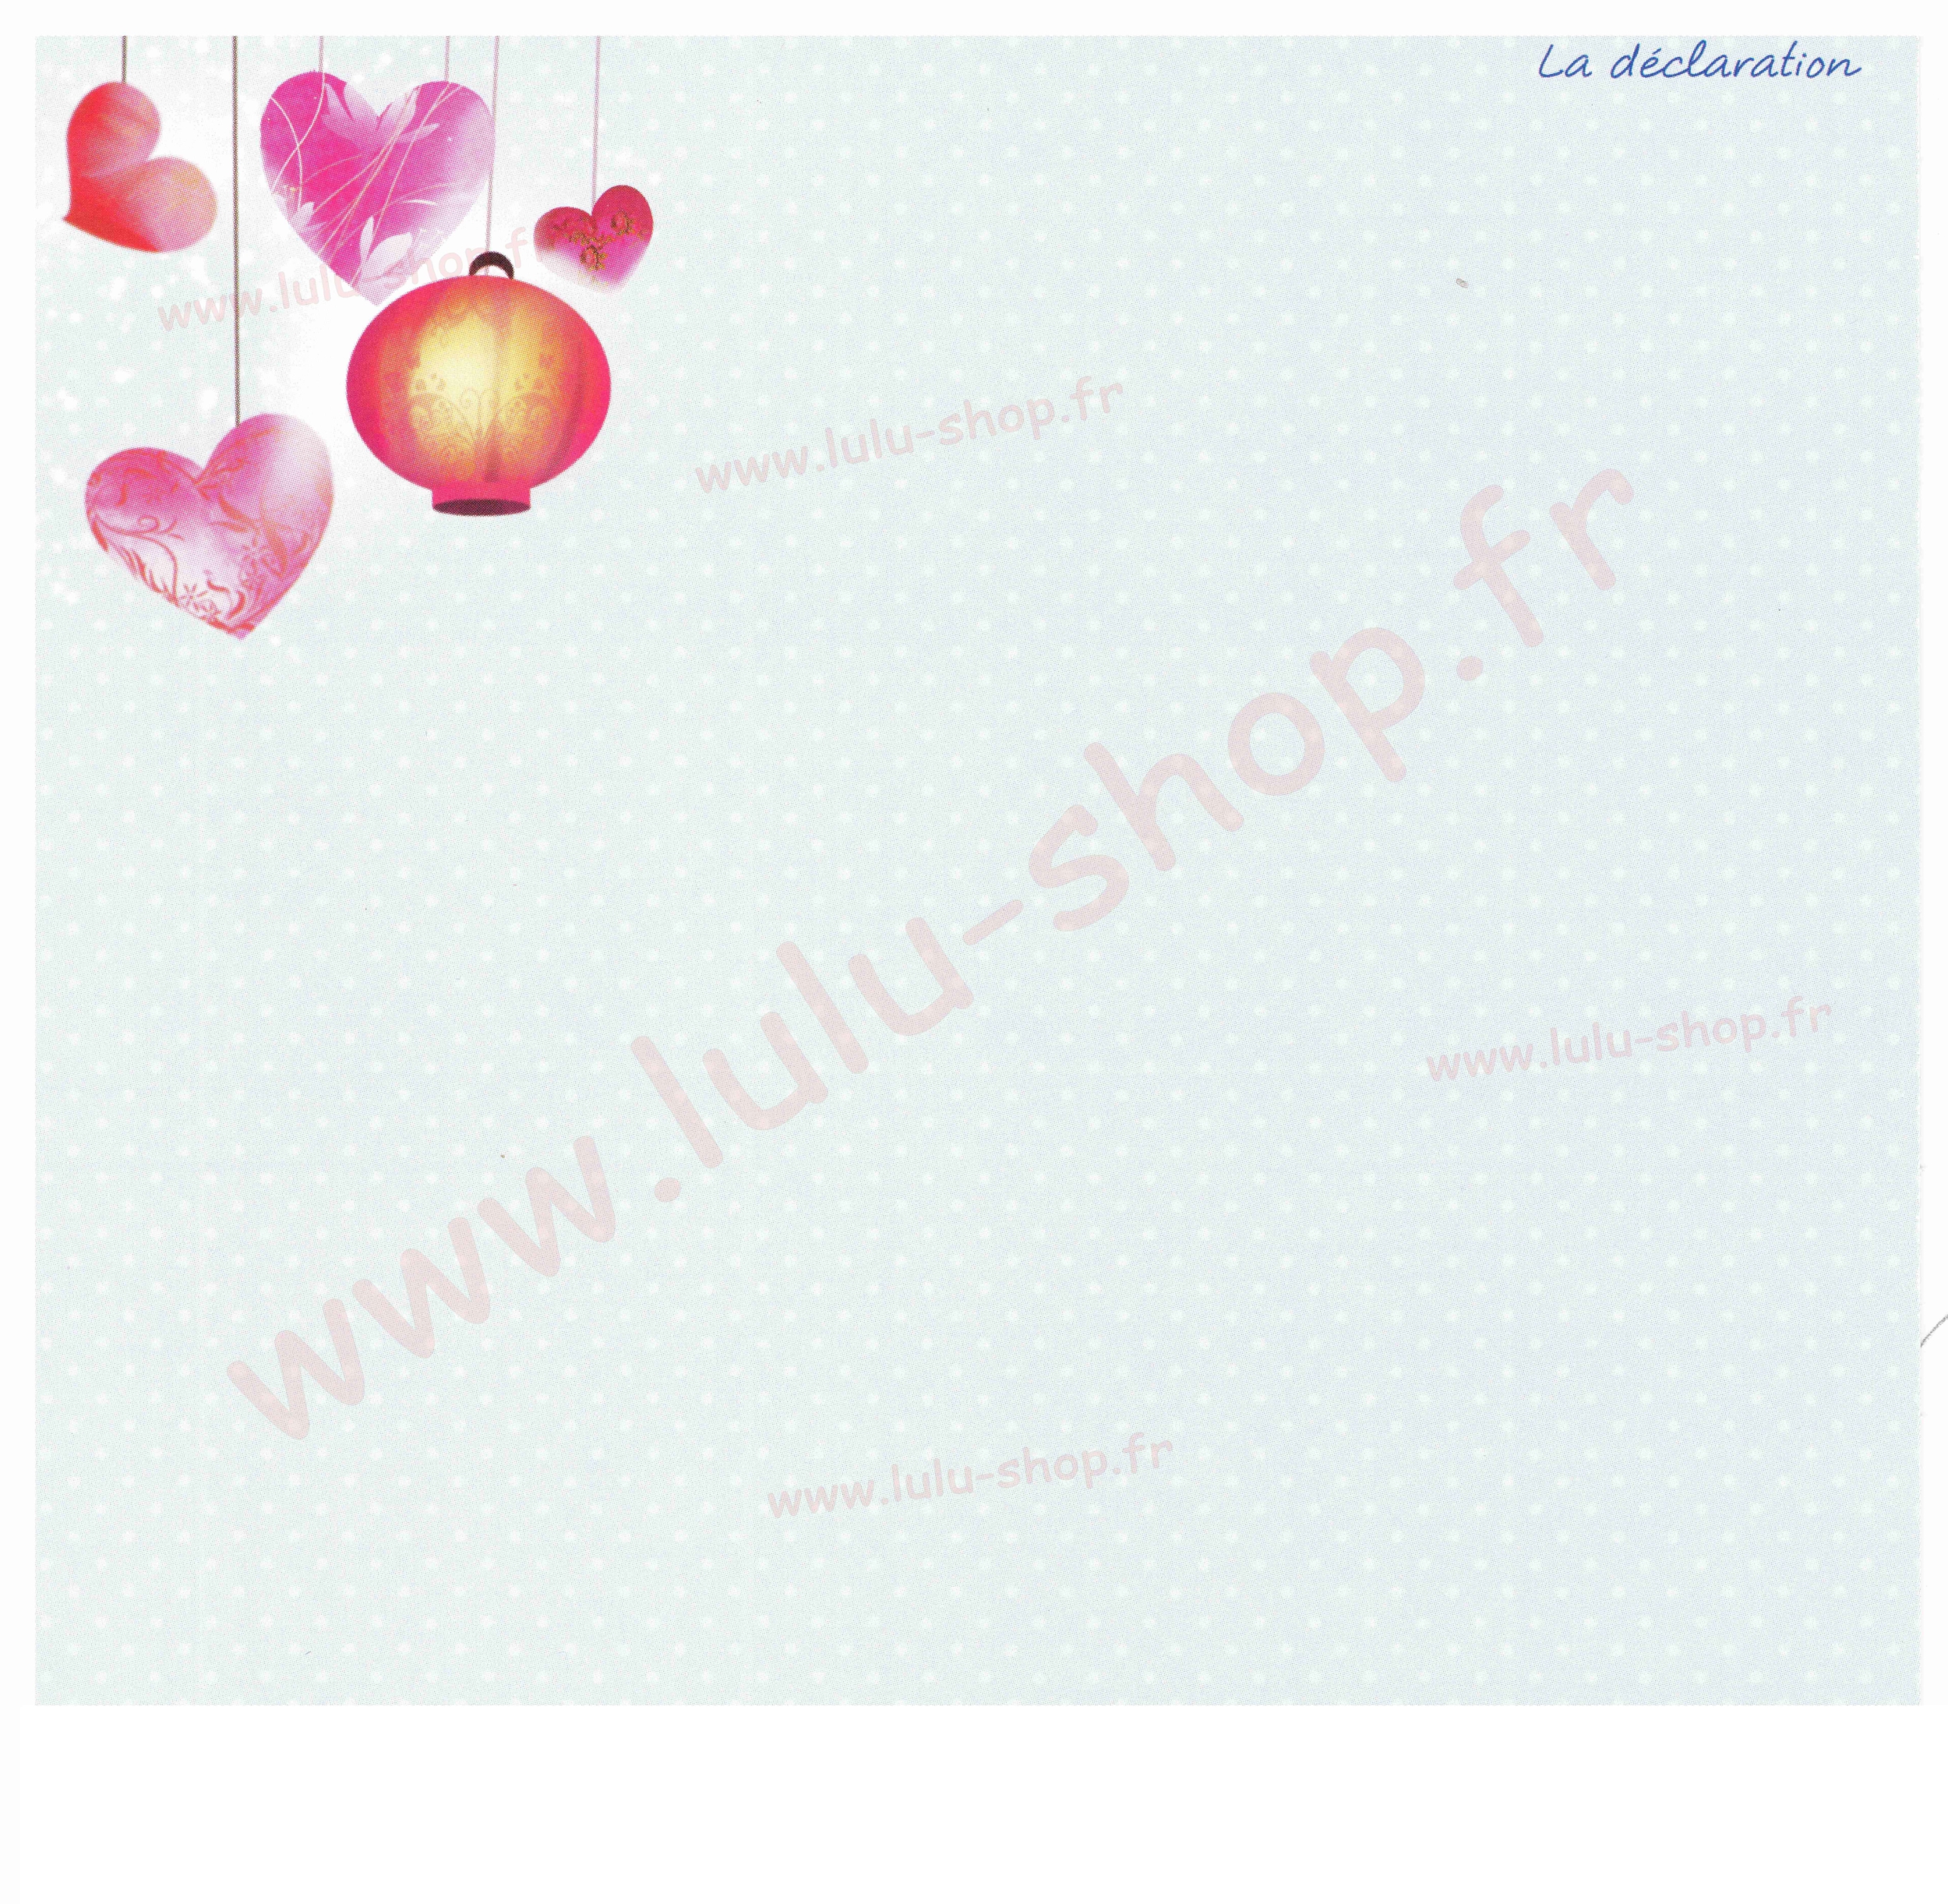 www.lulu-shop.fr carte postale La déclaration